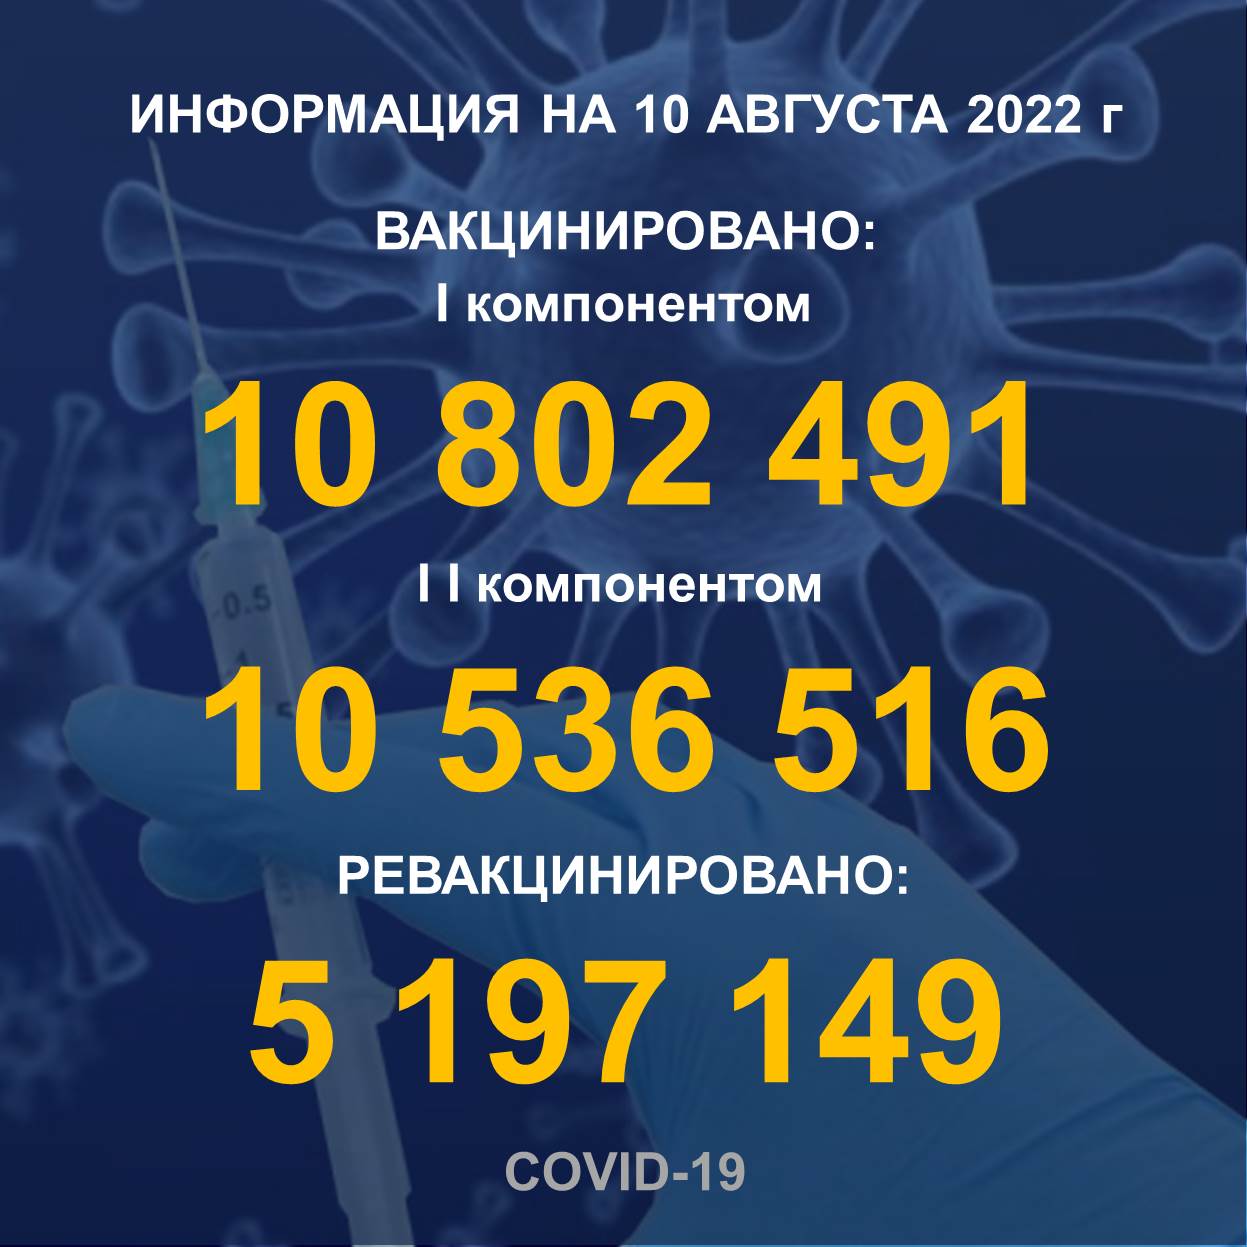 I компонентом 10 802 491 человек провакцинировано в Казахстане на 10.08.2022 г, II компонентом 10 536 516 человек. Ревакцинировано – 5 197 149